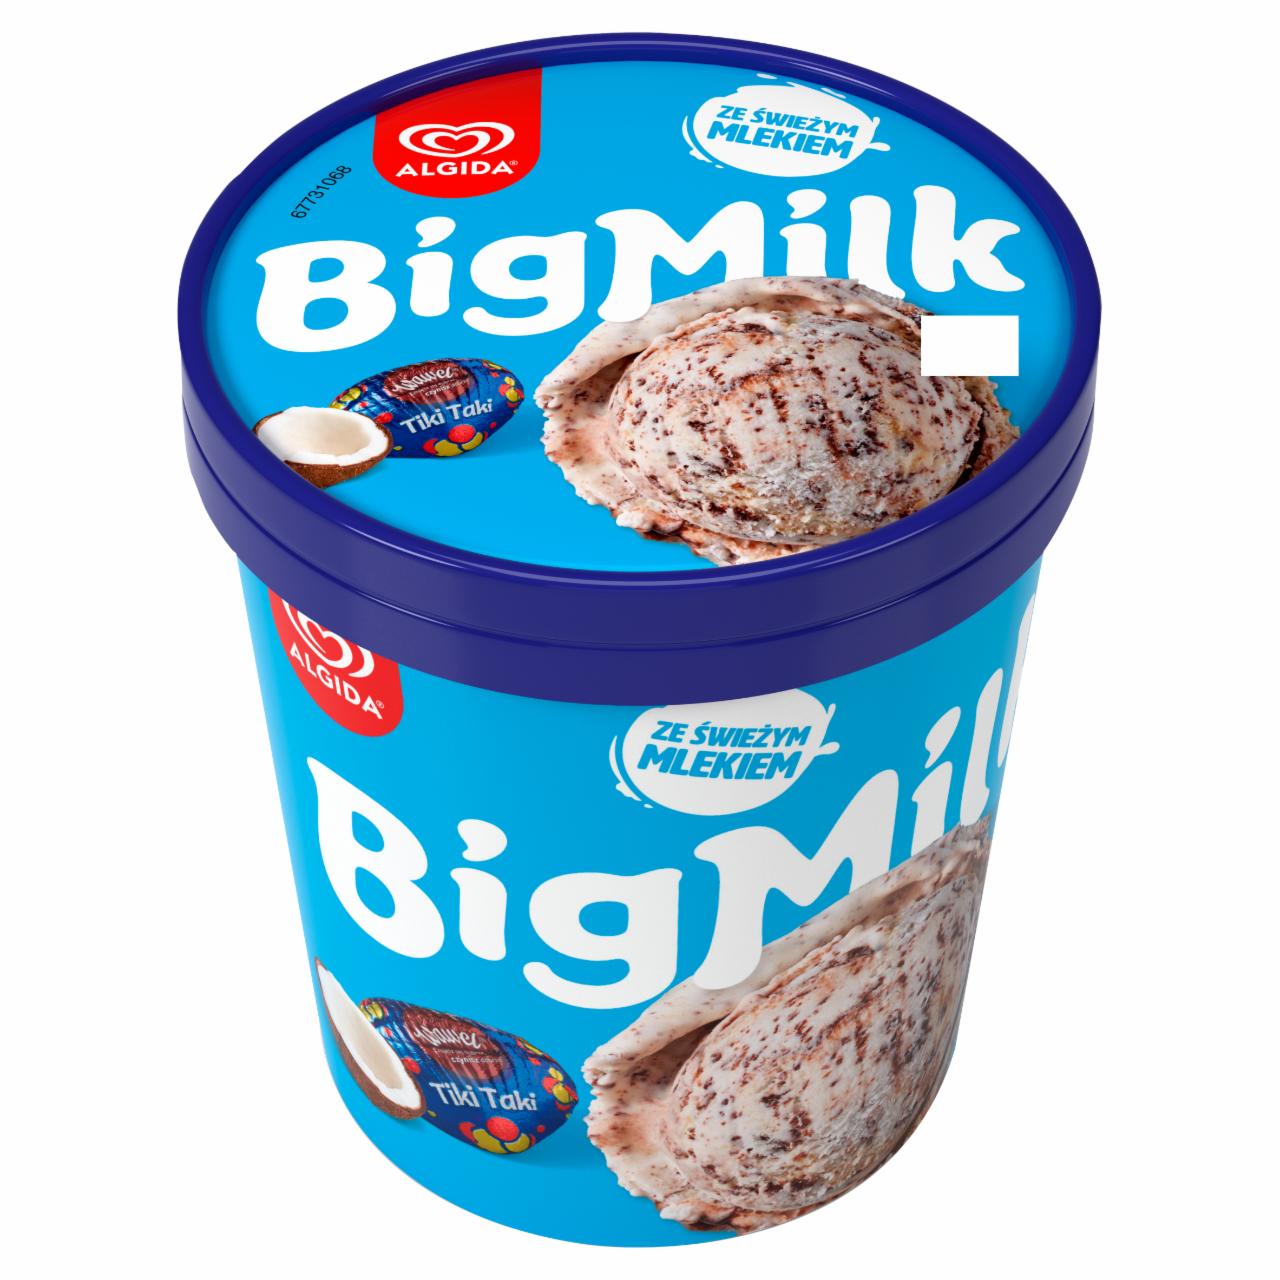 Zdjęcia - Big Milk Lody o smaku Tiki Taki z Wawelu 450 ml